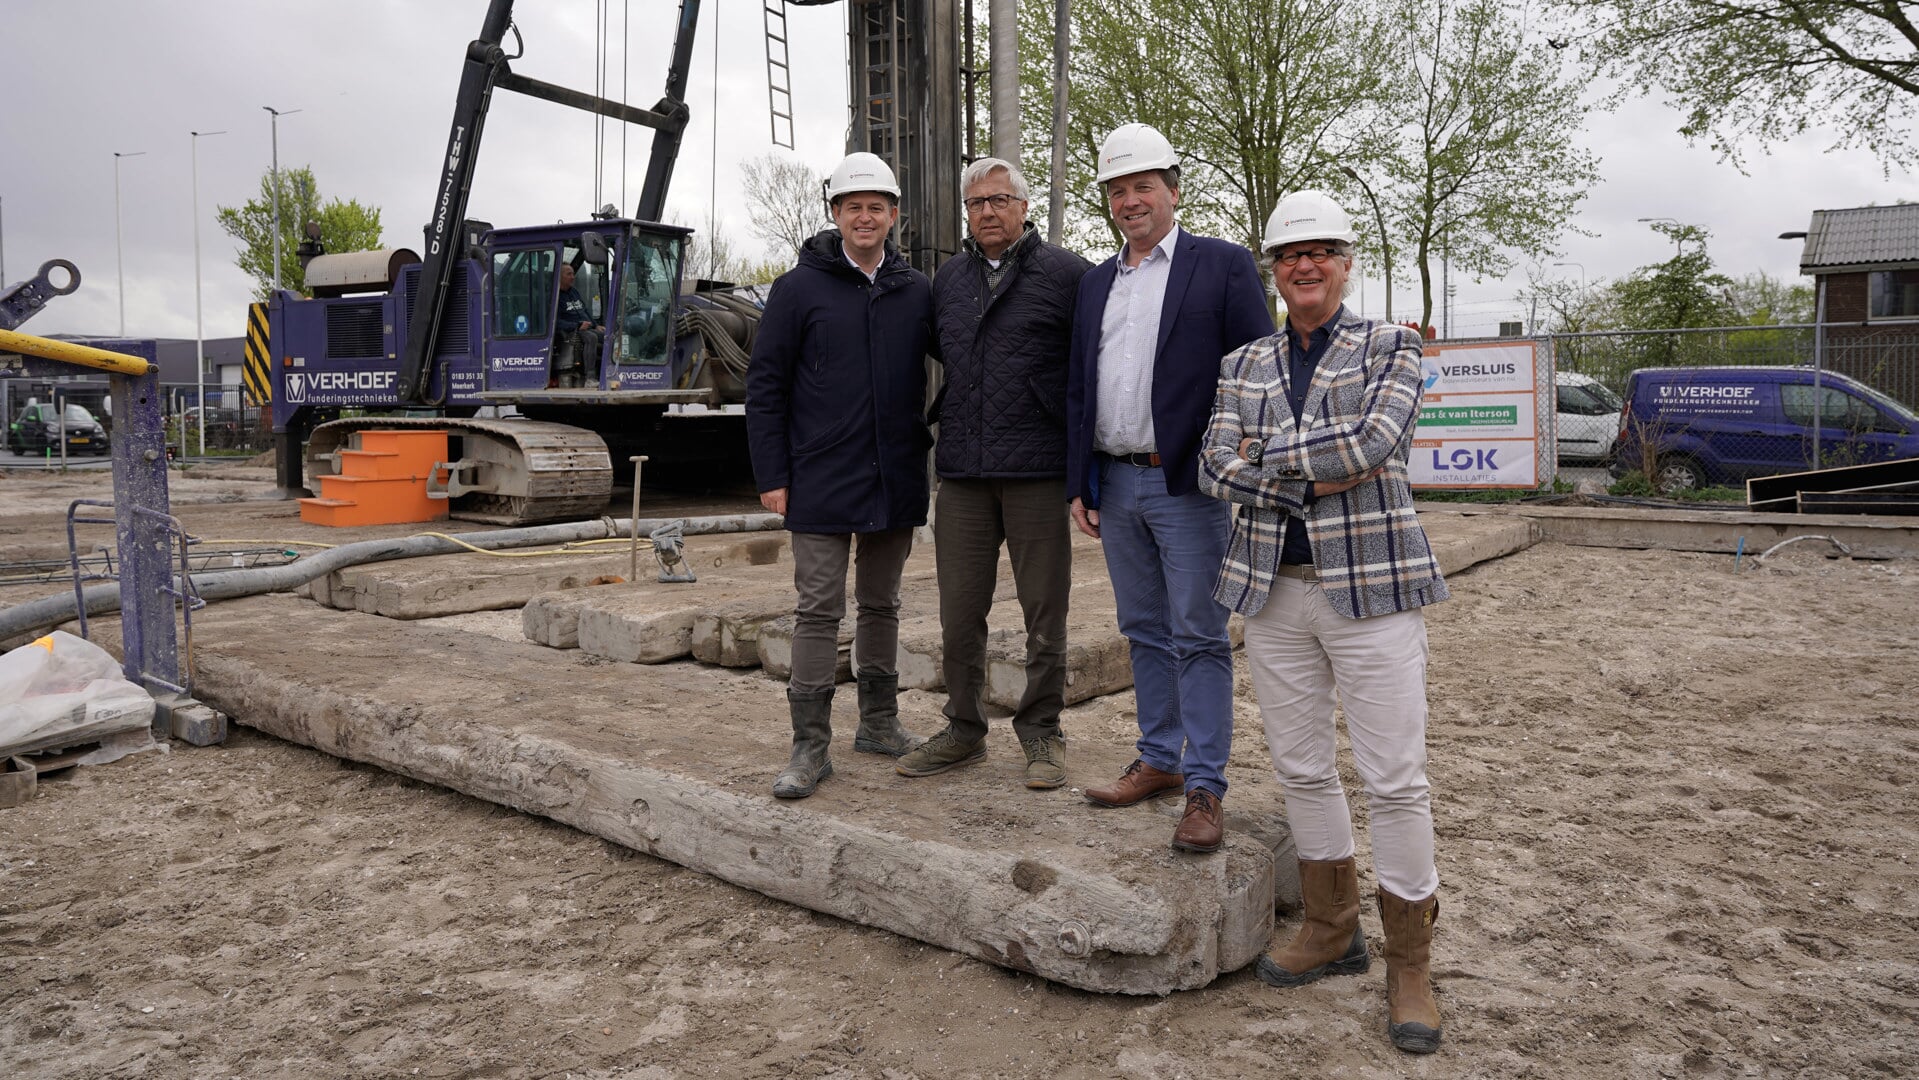 Martin Ouwehand, Jan Hogewoning, Henk Binnendijk en Peter Ouwehand zijn content met de start van de nieuwbouw Kringloopwinkel De Brug. 